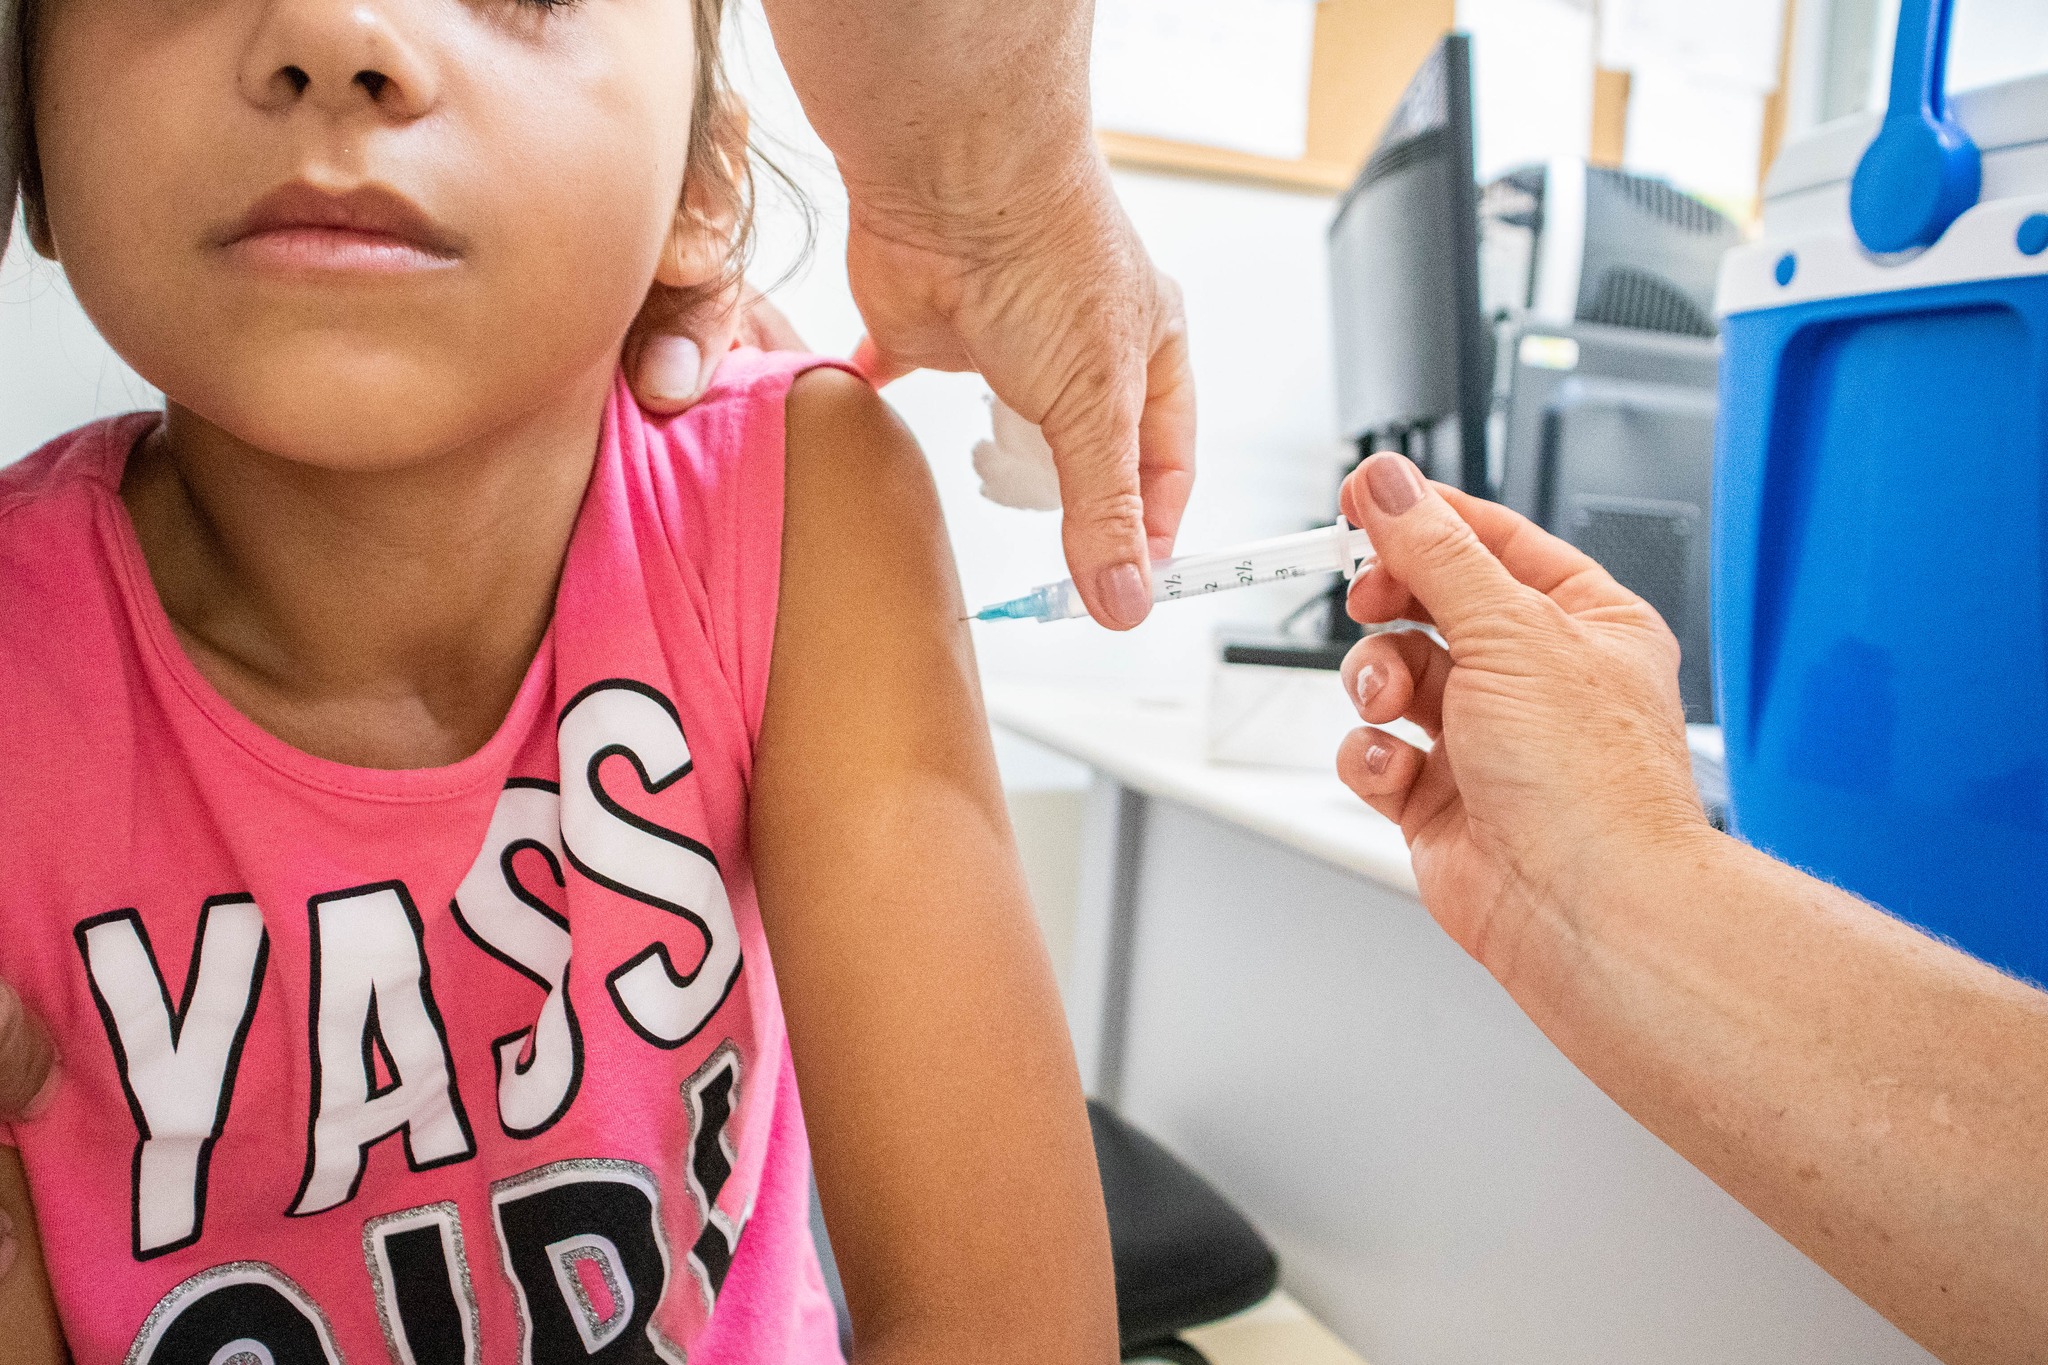 Vacinação aconteceu na UBS Central e atendeu cerca de 200 crianças e adolescentes. Foto: Henrique Alonso Camilo / Prefeitura Municipal de Urupês.